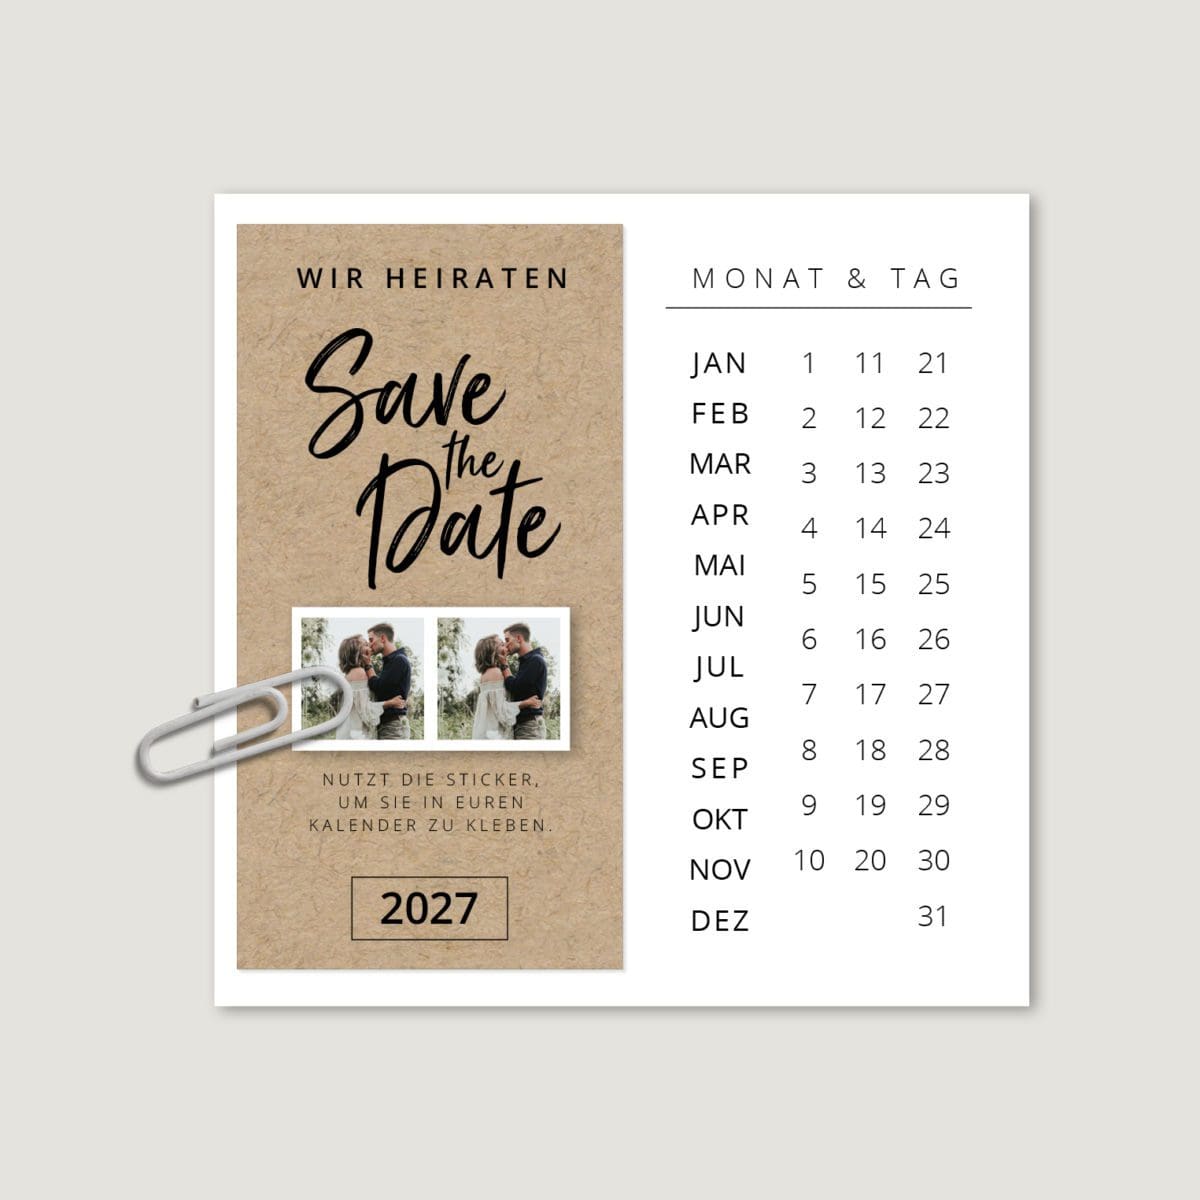 Save the Date Kalender Vorlage